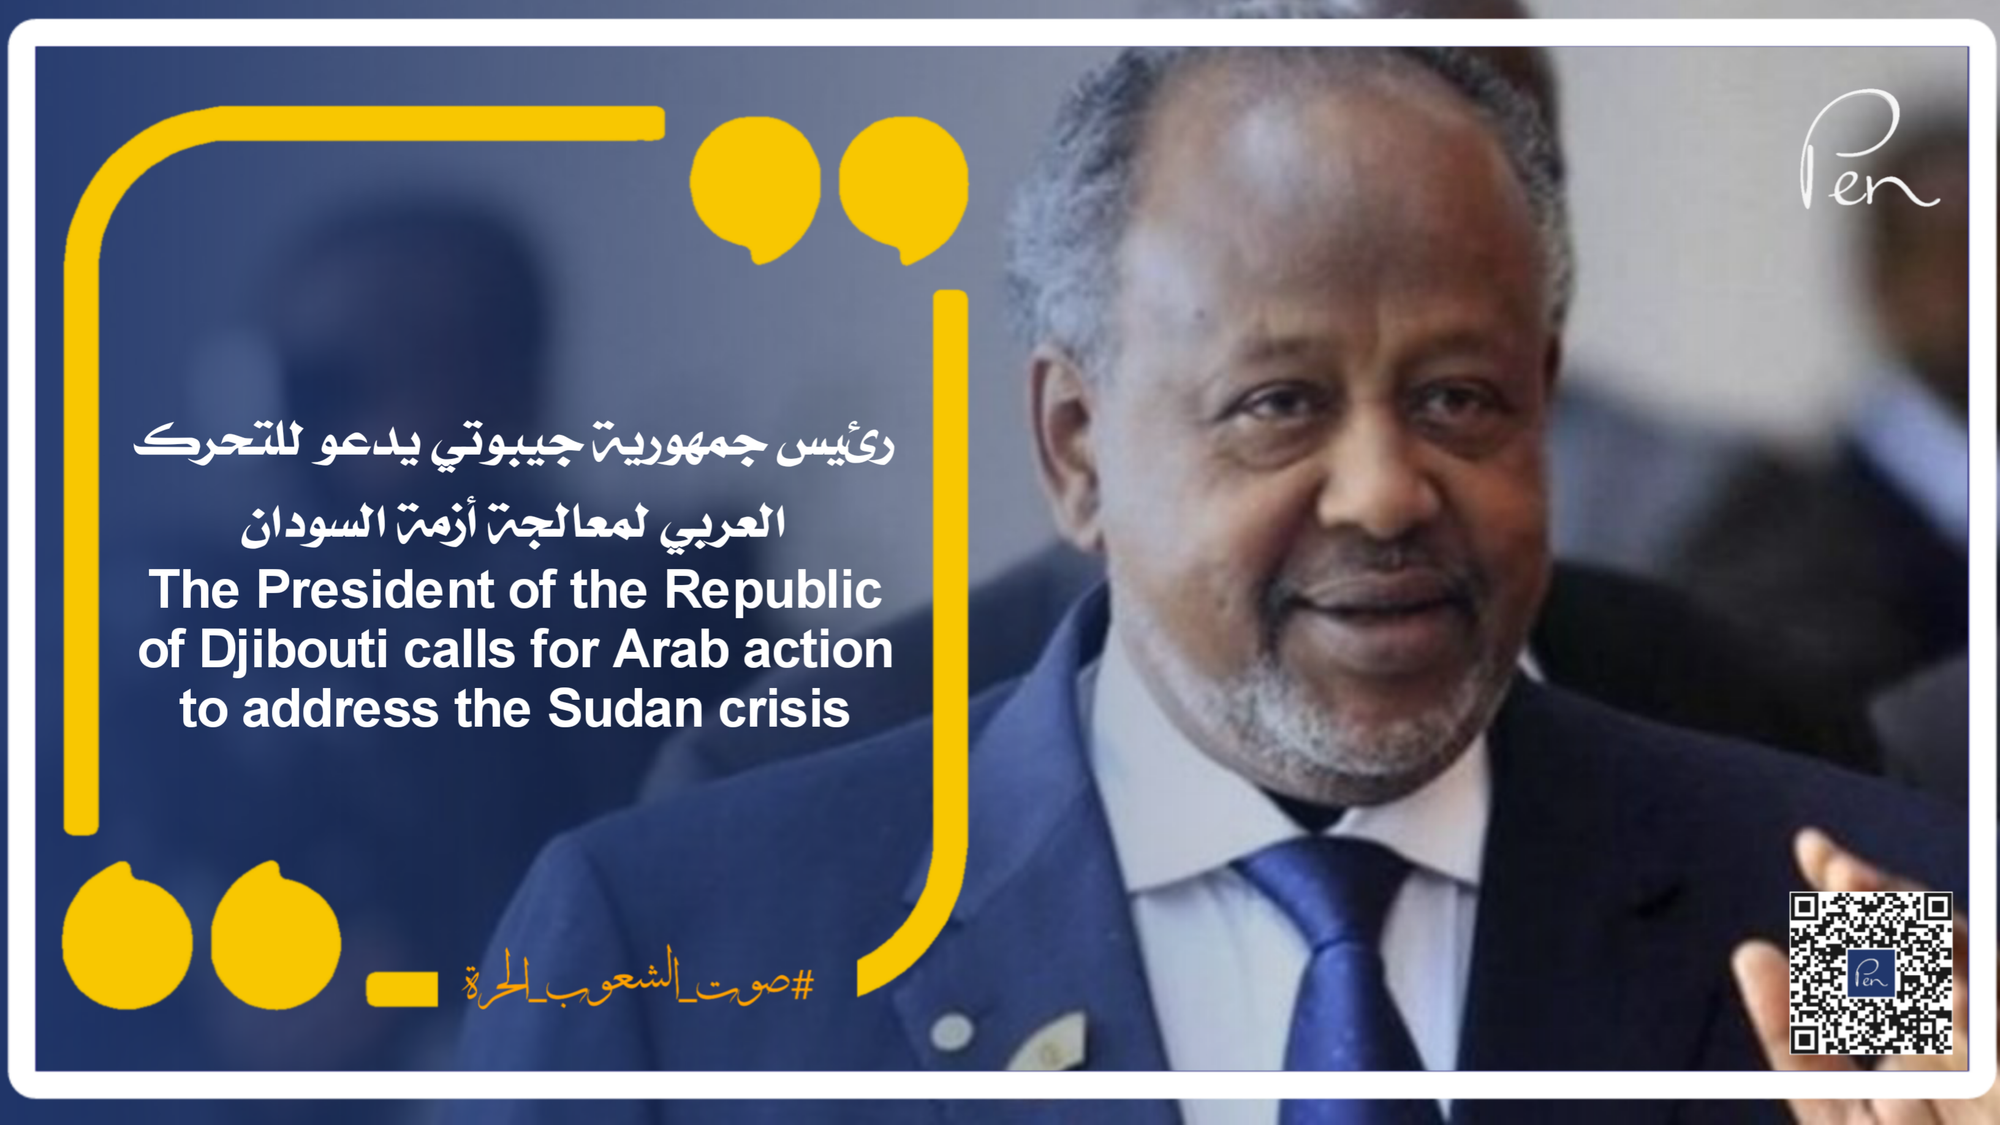 رئيس جمهورية جيبوتي يدعو للتحرك العربي لمعالجة أزمة السودان